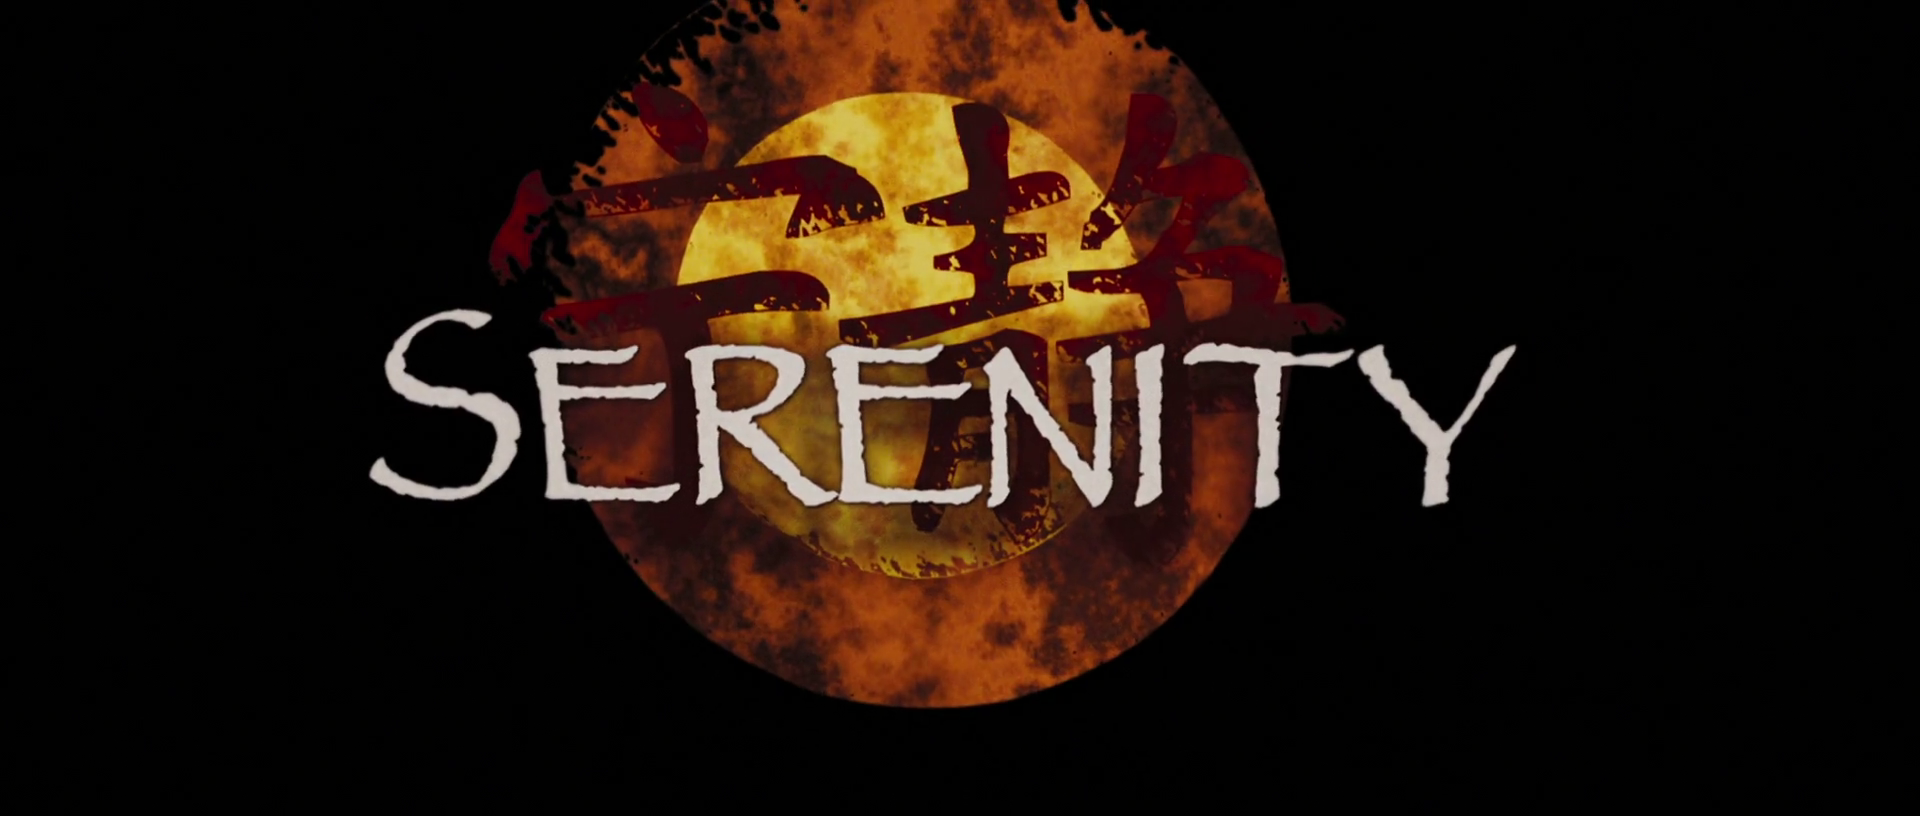 Serenity 2005 1080p BluRay x264 MKV AAC Web DL 2 1GB